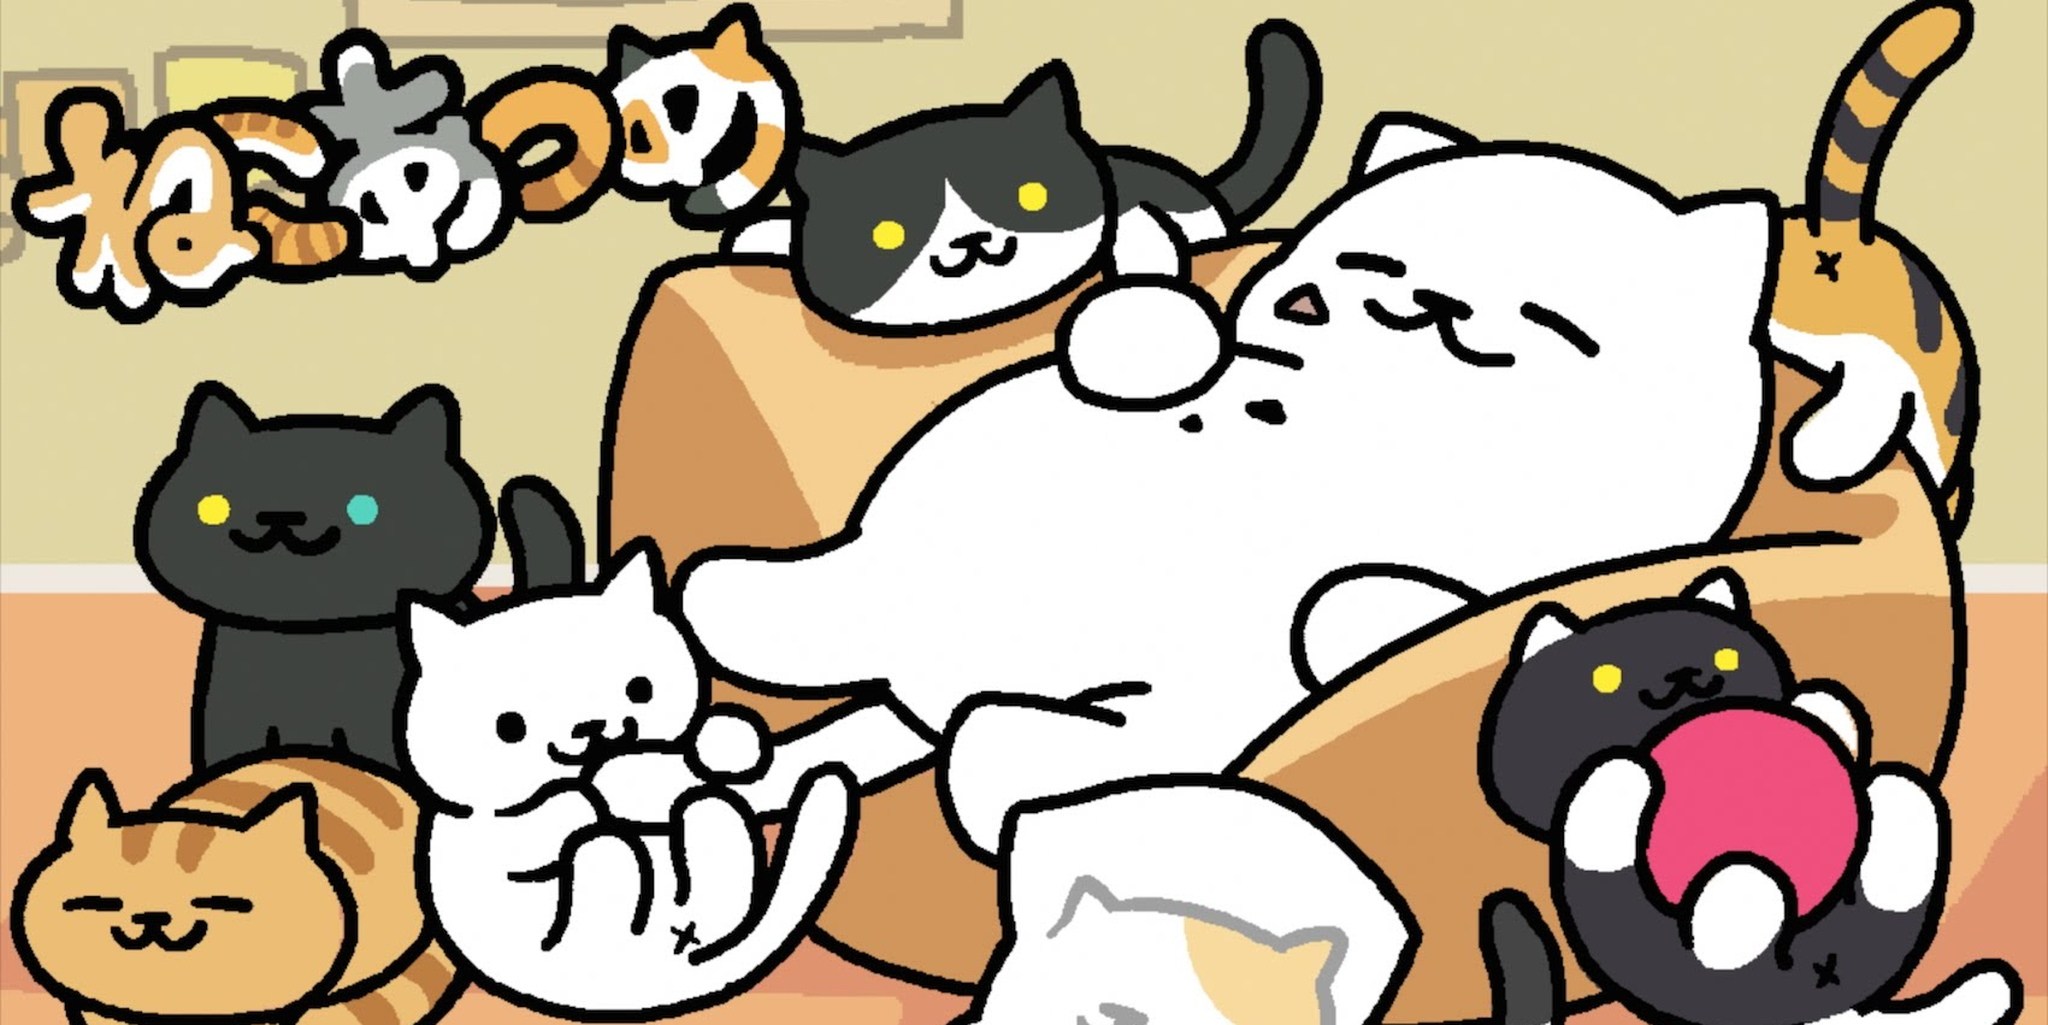 Ис кот. Neko Atsume: Kitty Collector. Игра котики. Котик из игры. Милые игры про котиков.